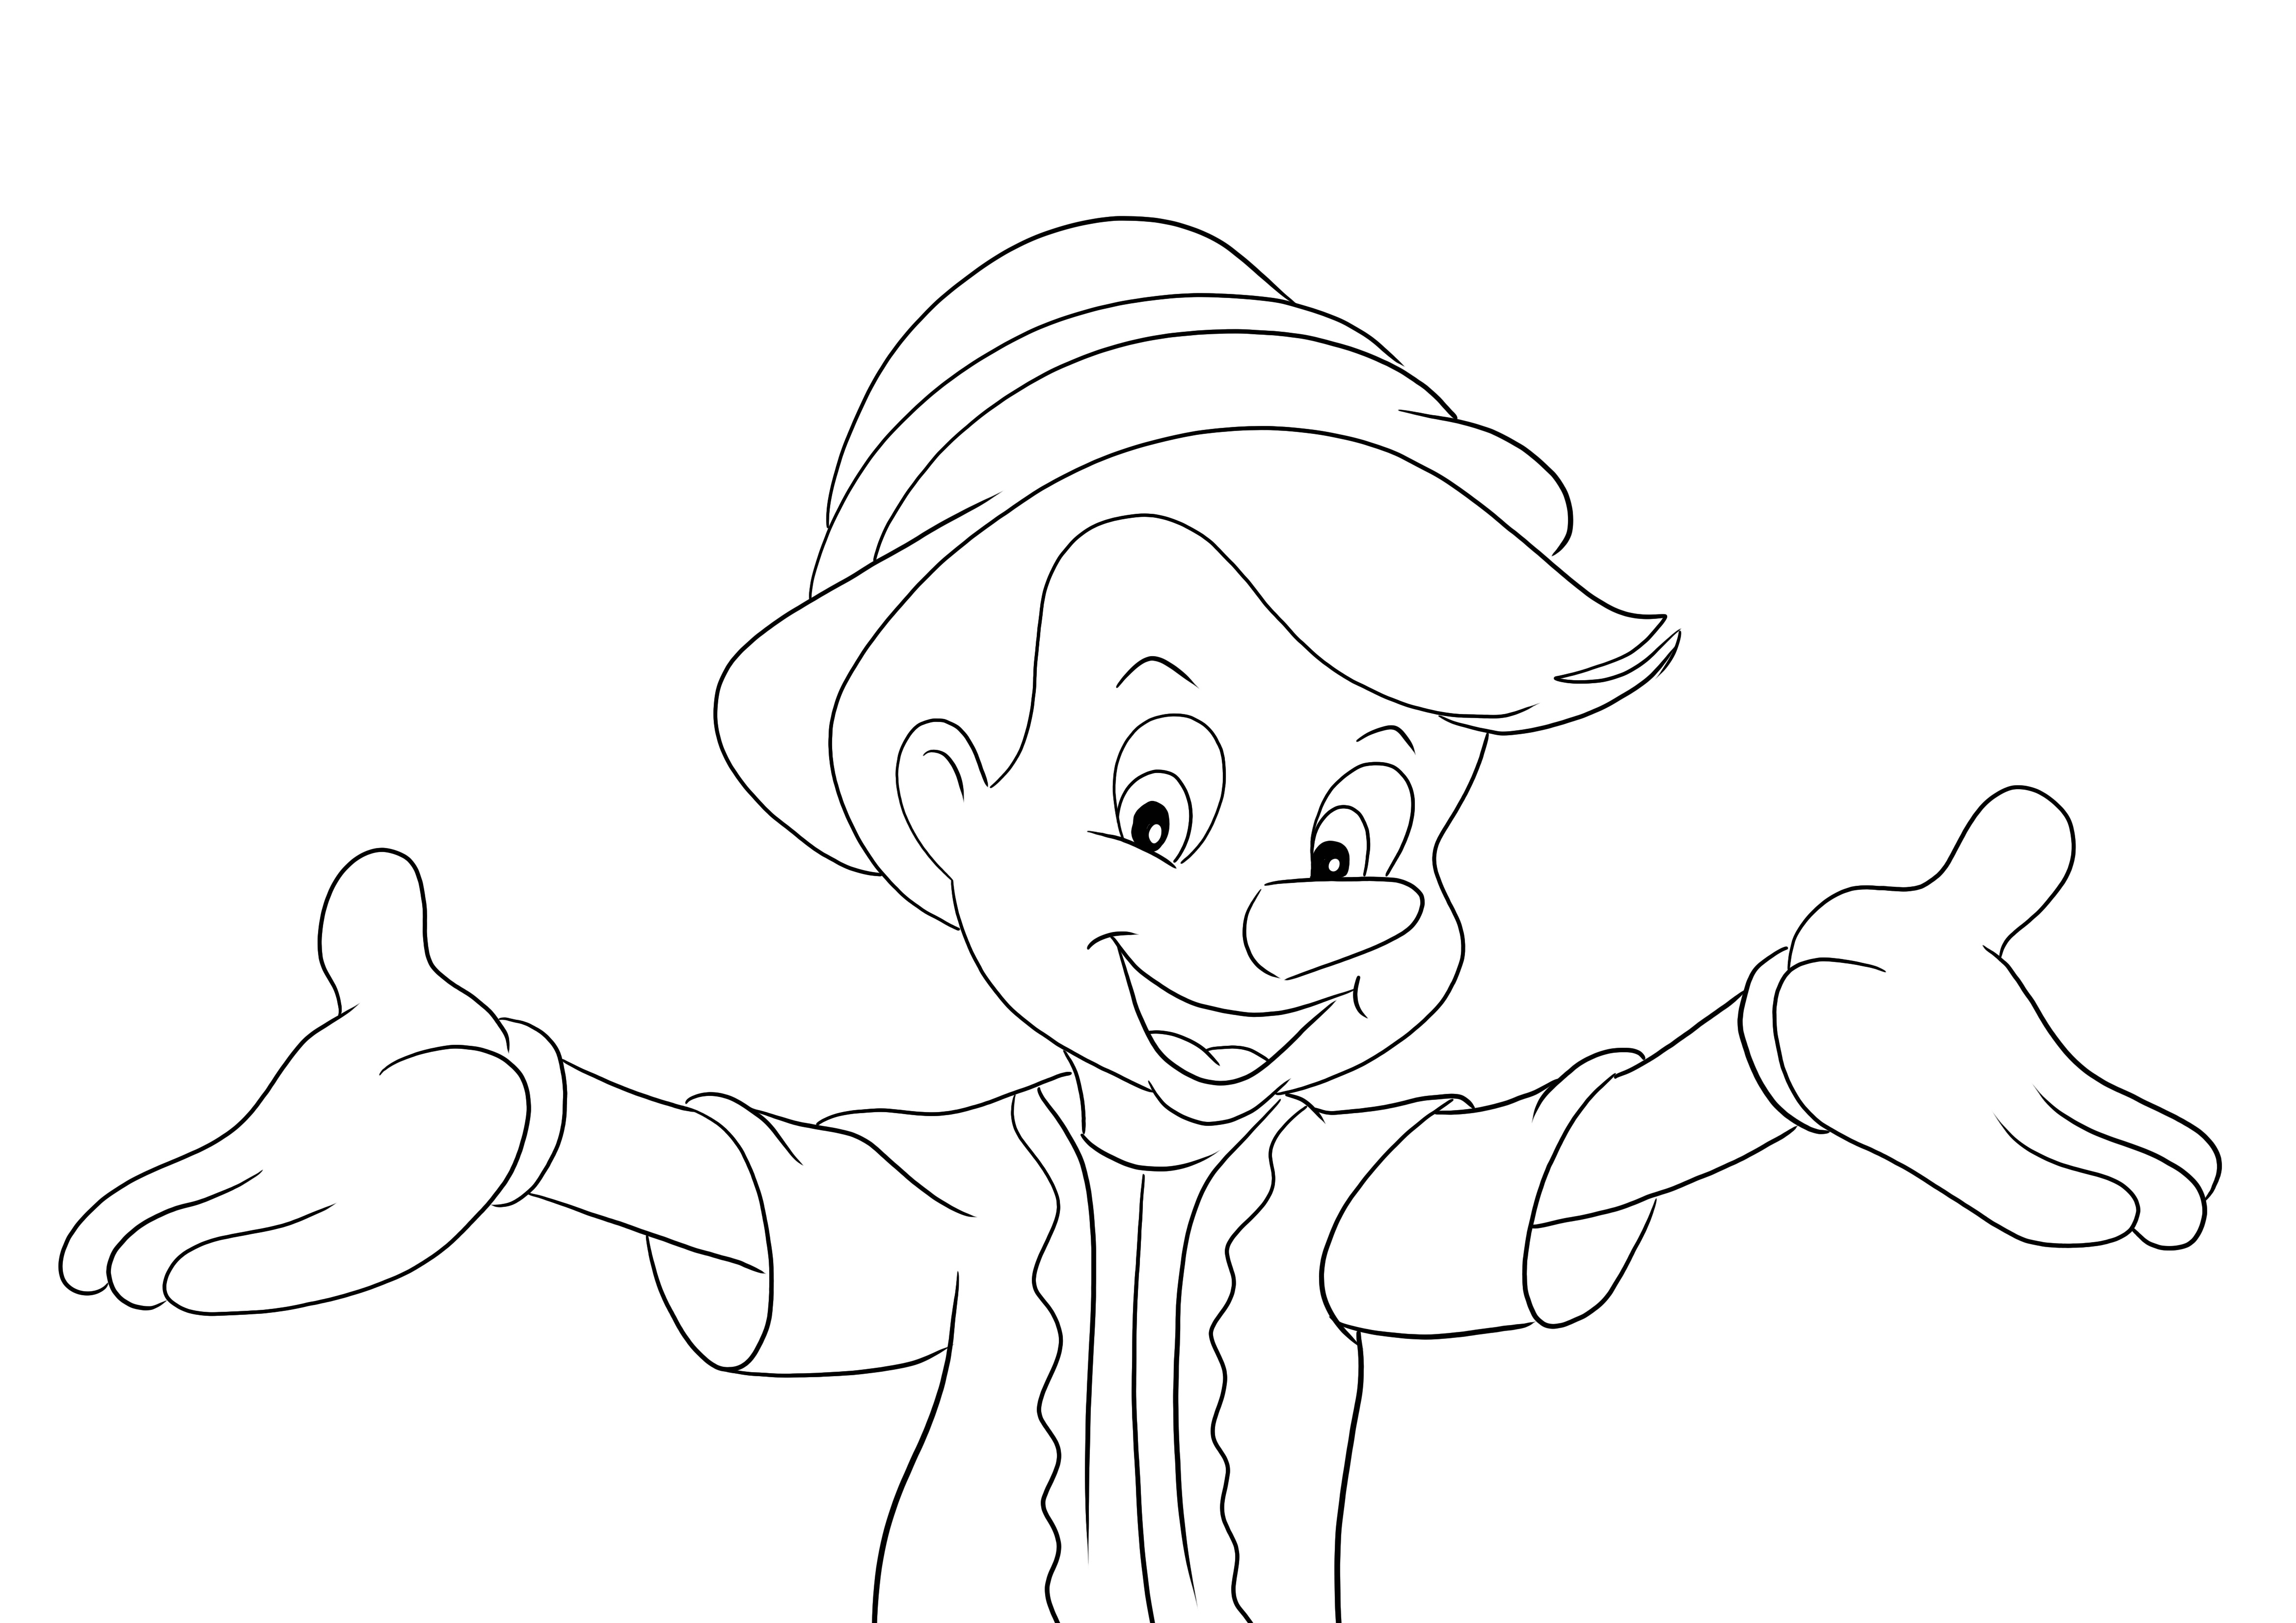 Pinokio dan buka gambar cetak dan mewarnai hands-free untuk anak-anak